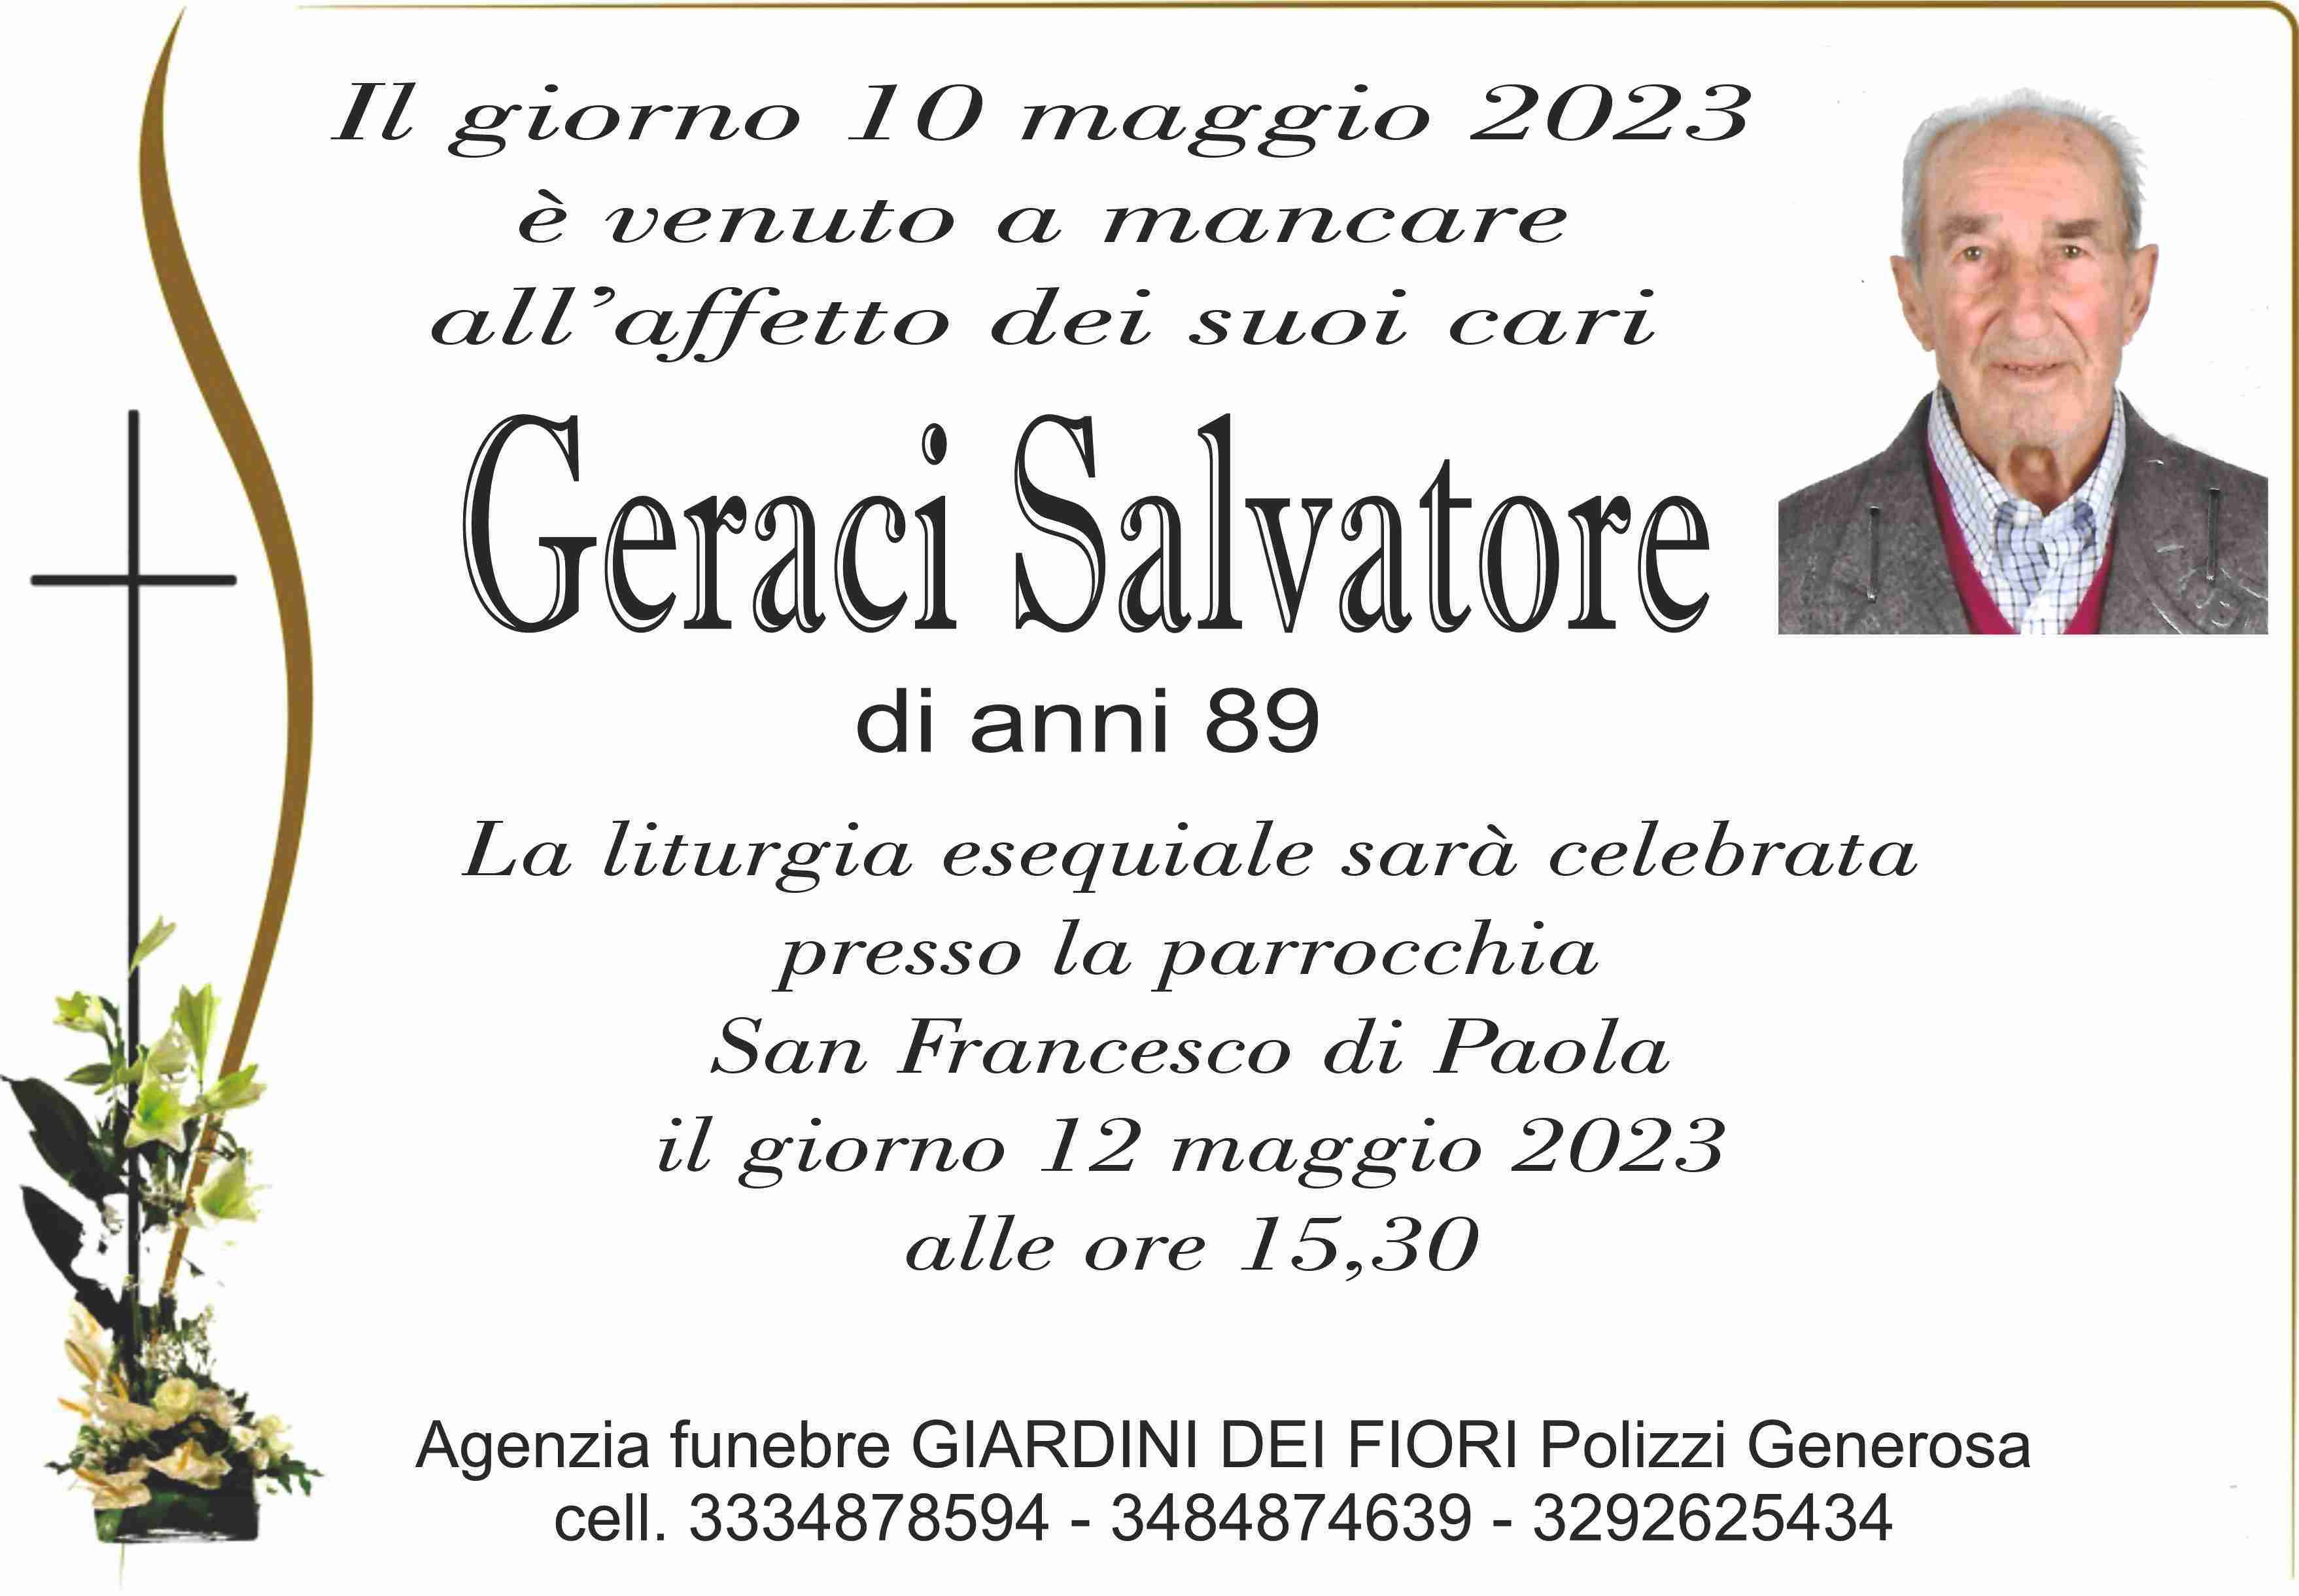 Salvatore Geraci